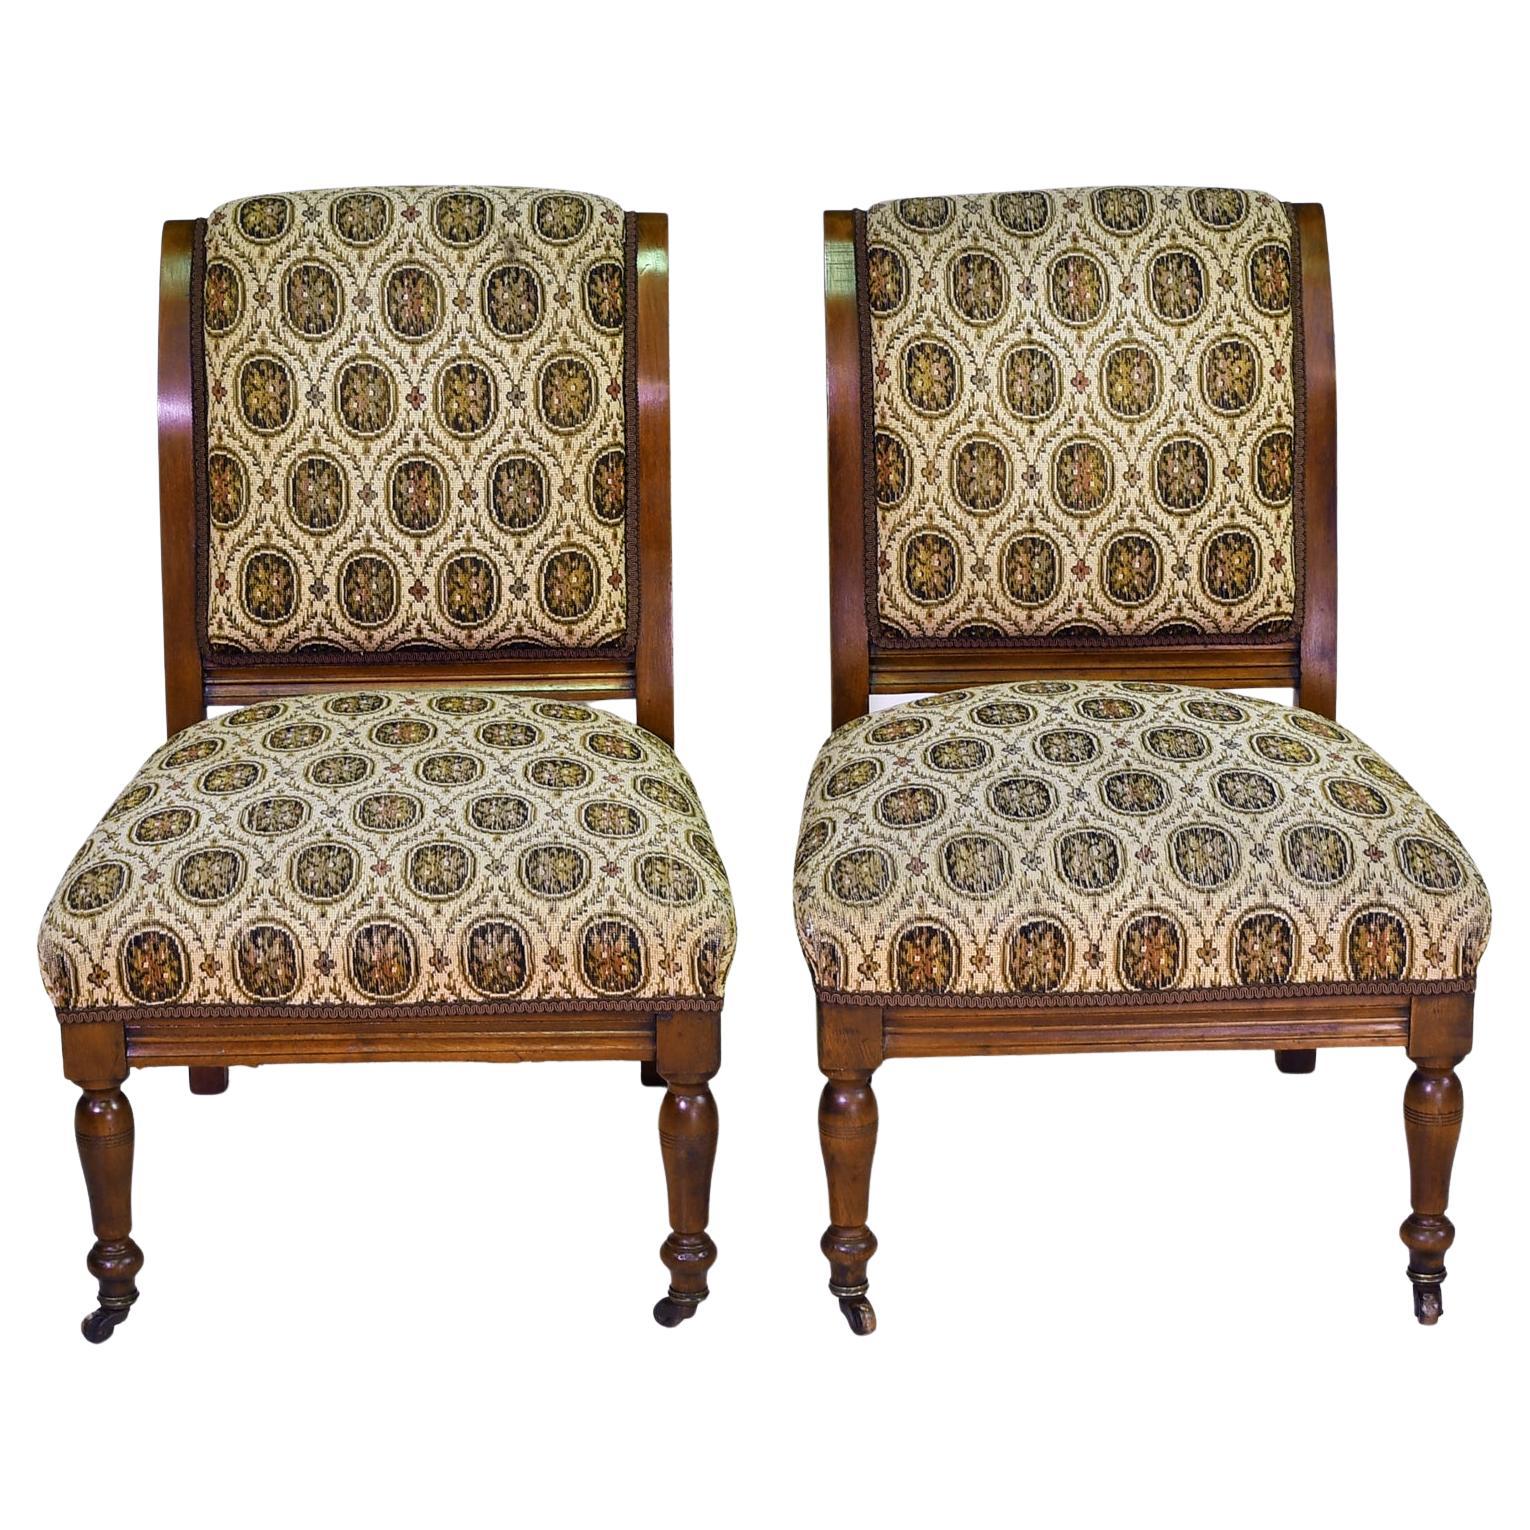 Paire de chaises à pantoufles victoriennes en noyer avec dossier et assise tapissés, vers 1840. Le dossier est à enroulement, l'assise est sculptée et les pieds avant sont tournés. Le cadre rembourré d'origine est doté de ressorts, conçus pour un